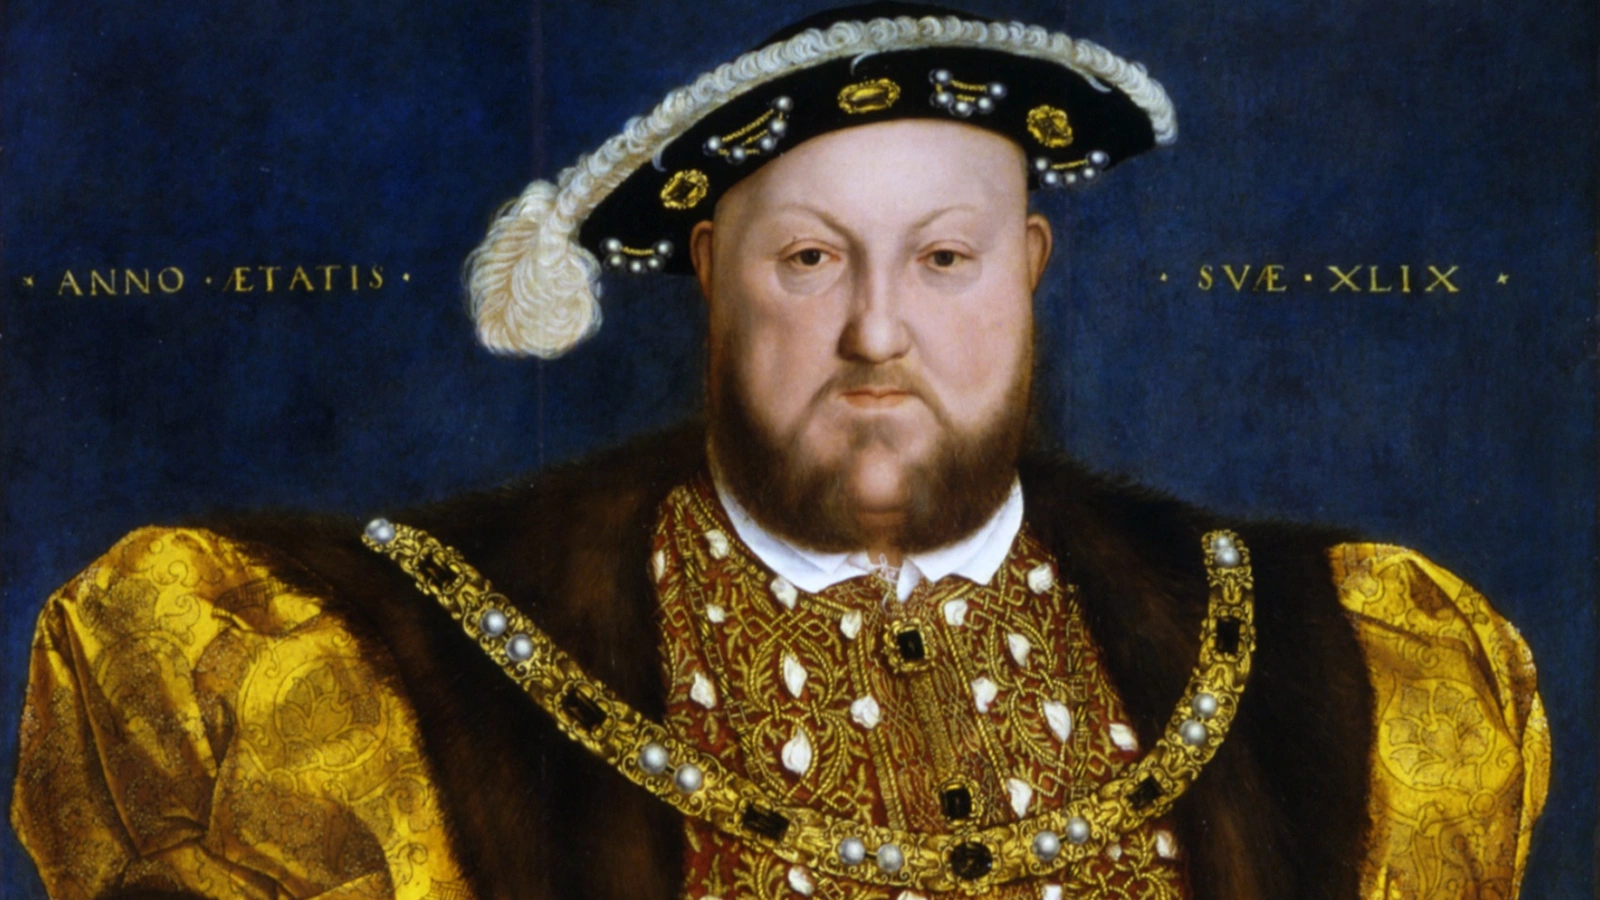 <p>Портрет короля Генриха VIII. Художник&nbsp;&mdash; Ганс Гольбейн Младший (1540)</p>